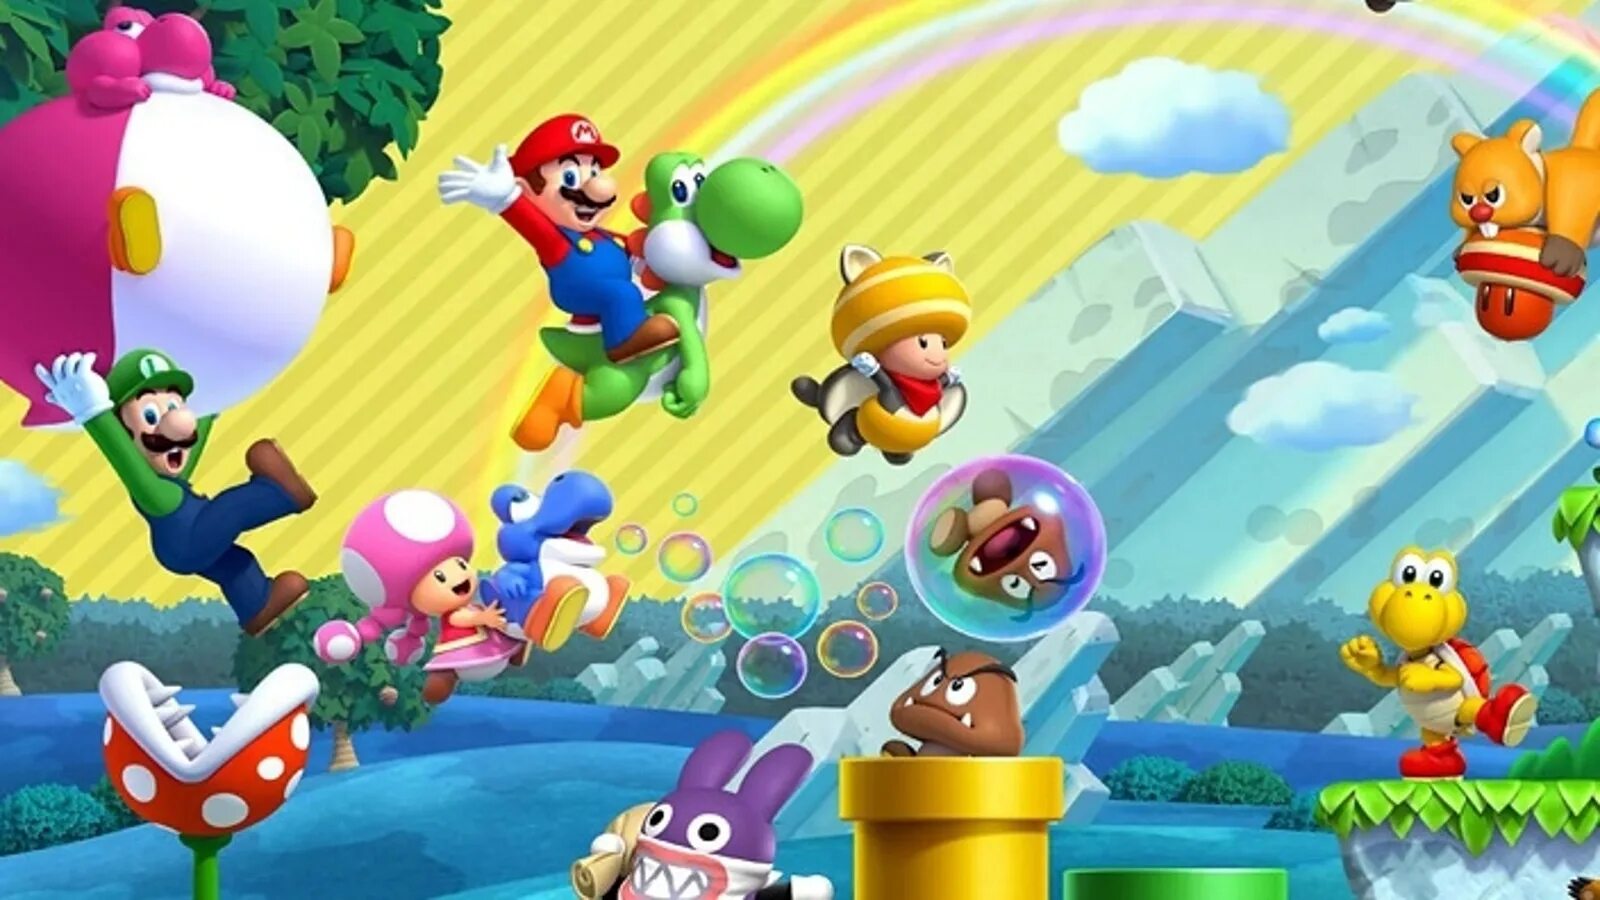 Newer mario bros download. New super Mario Bros. U Deluxe. New super Mario Bros Wii u. New super Mario Bros u Deluxe Nintendo Switch. New super Mario Bros Wii.